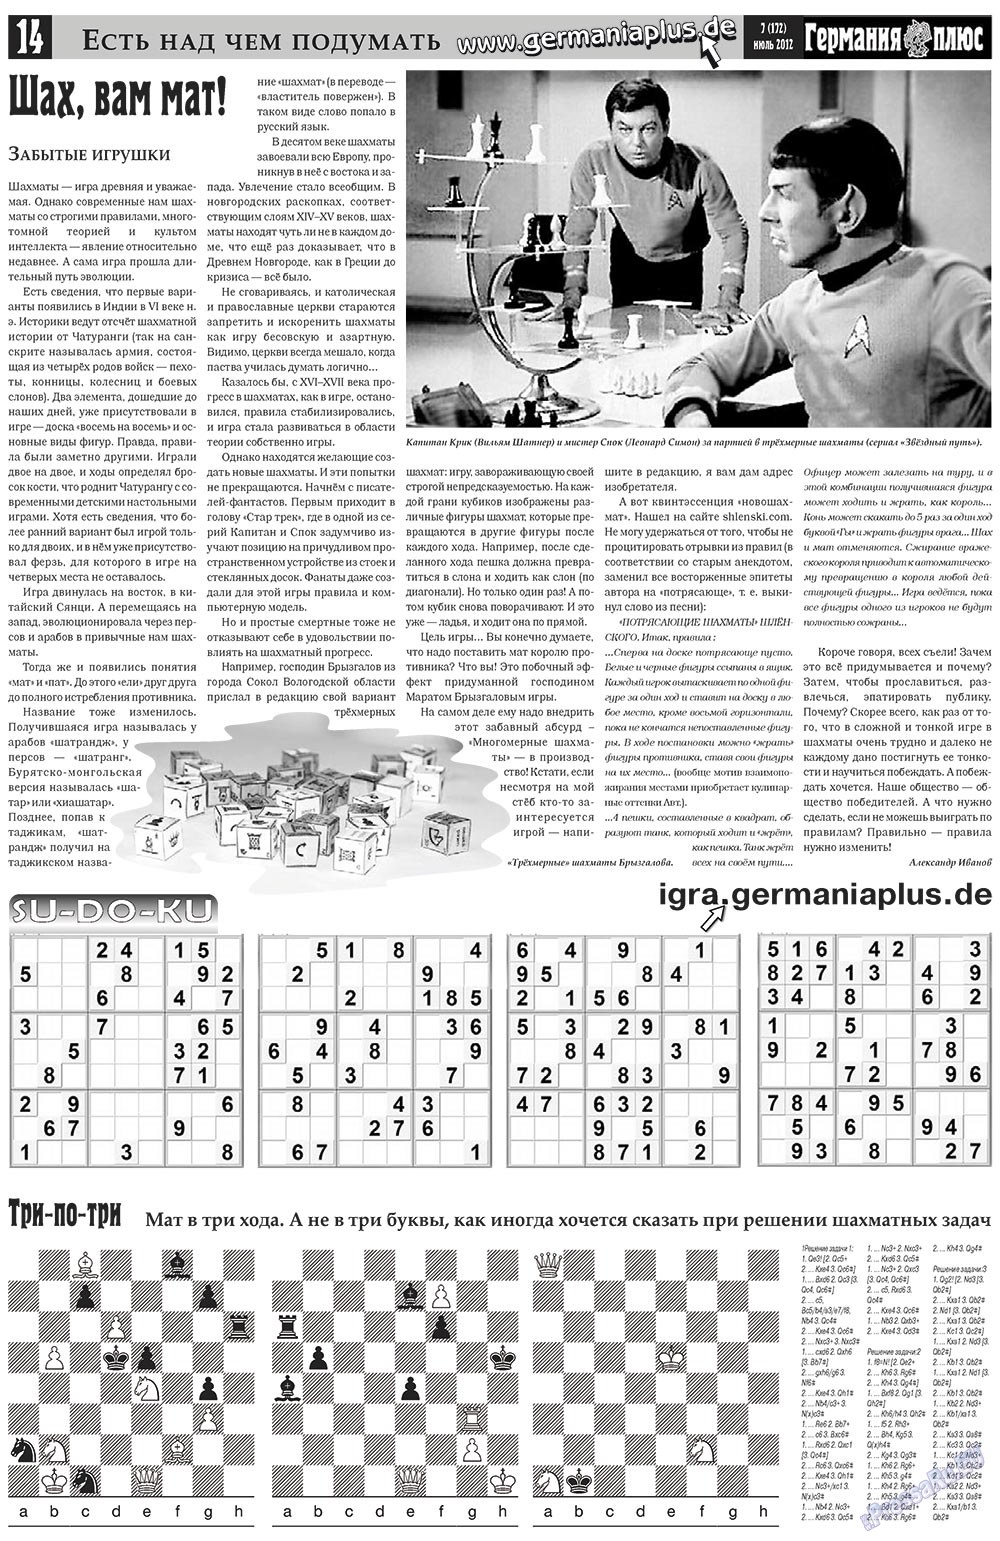 Германия плюс, газета. 2012 №7 стр.14